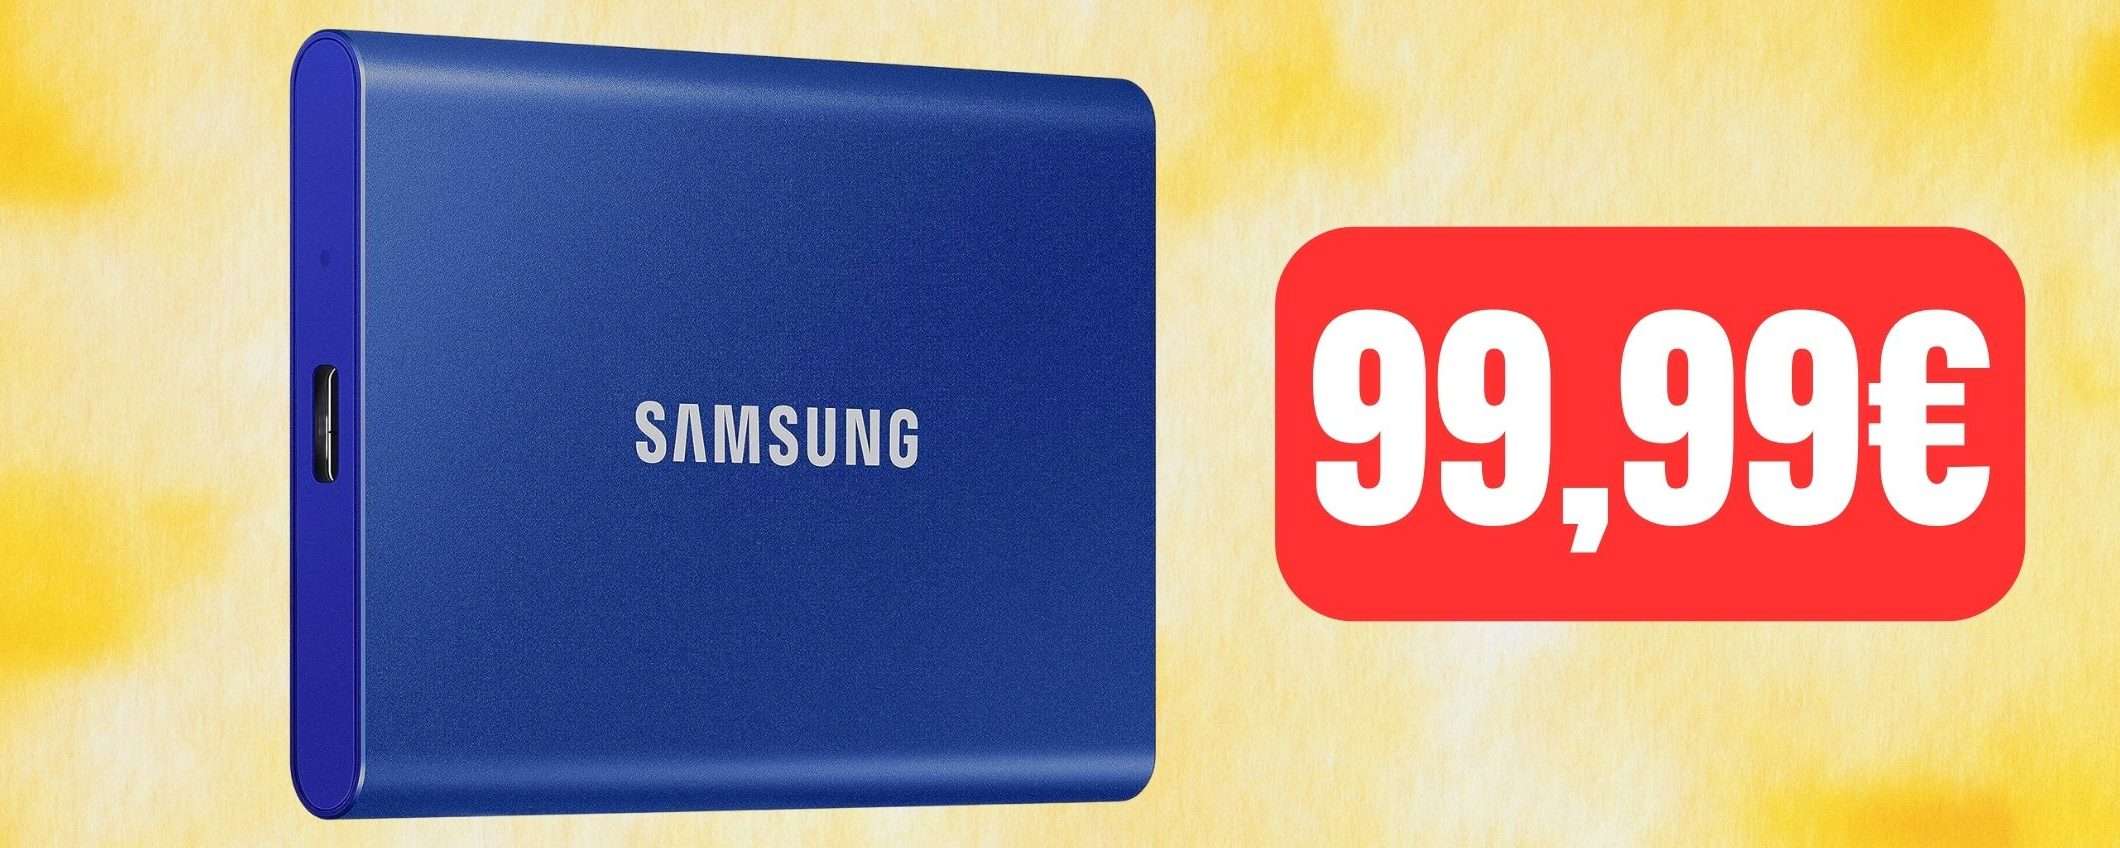 SSD portatile Samsung 1TB a soli 99,99€: OCCASIONE su Amazon (-38%)